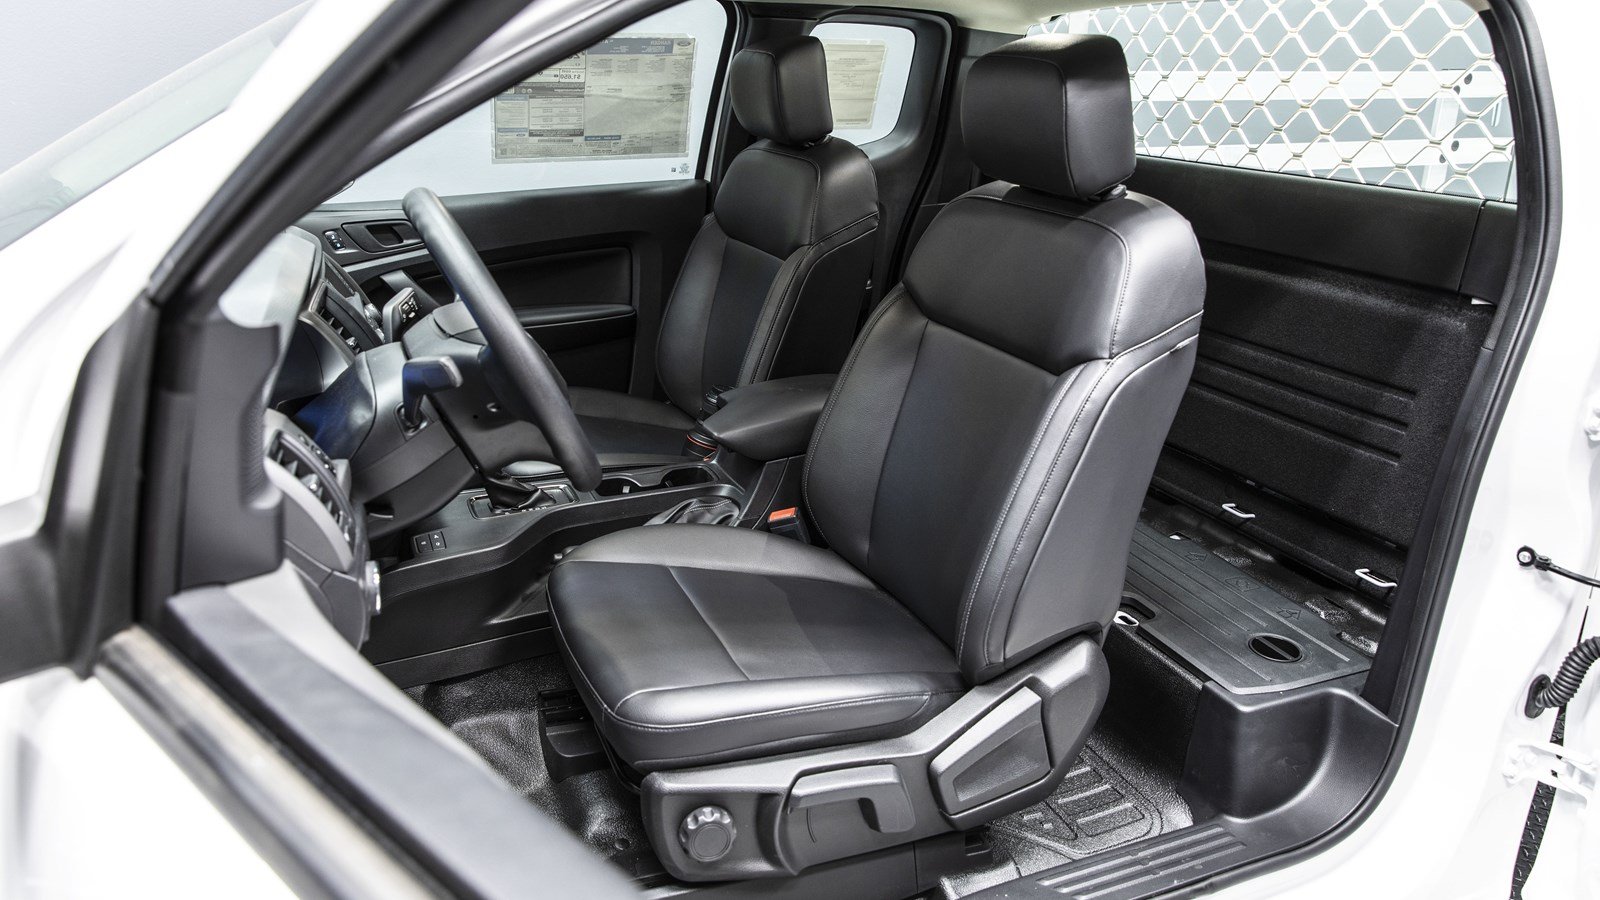 Ford Ranger 2019 Ranger XL Rear Seat Delete Option 22c555a05cf4cd1b08dada9886a0b3dd